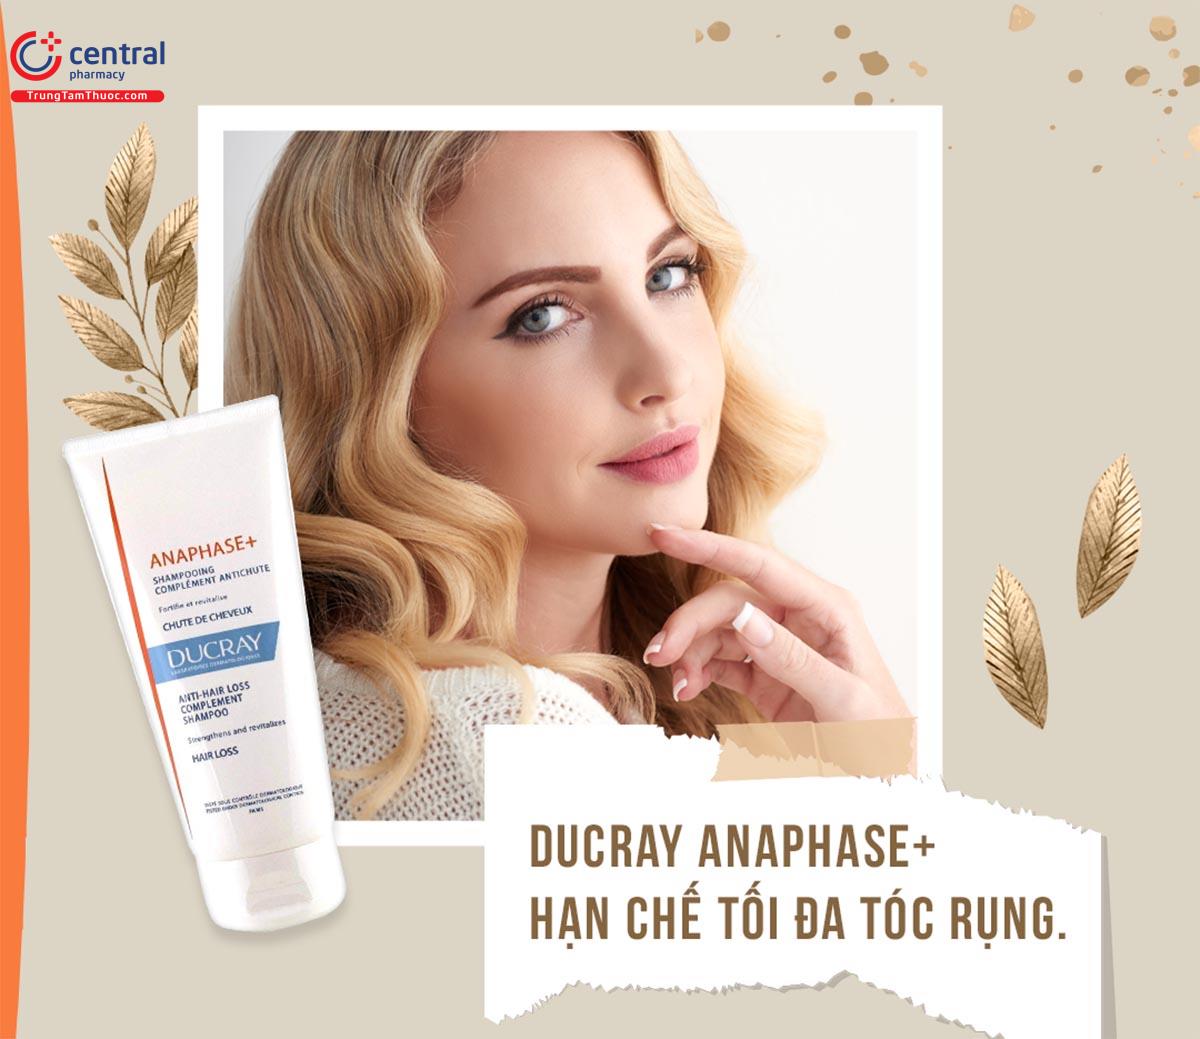 Dầu gội Ducray Anaphase+ giúp giảm tóc gãy rụng